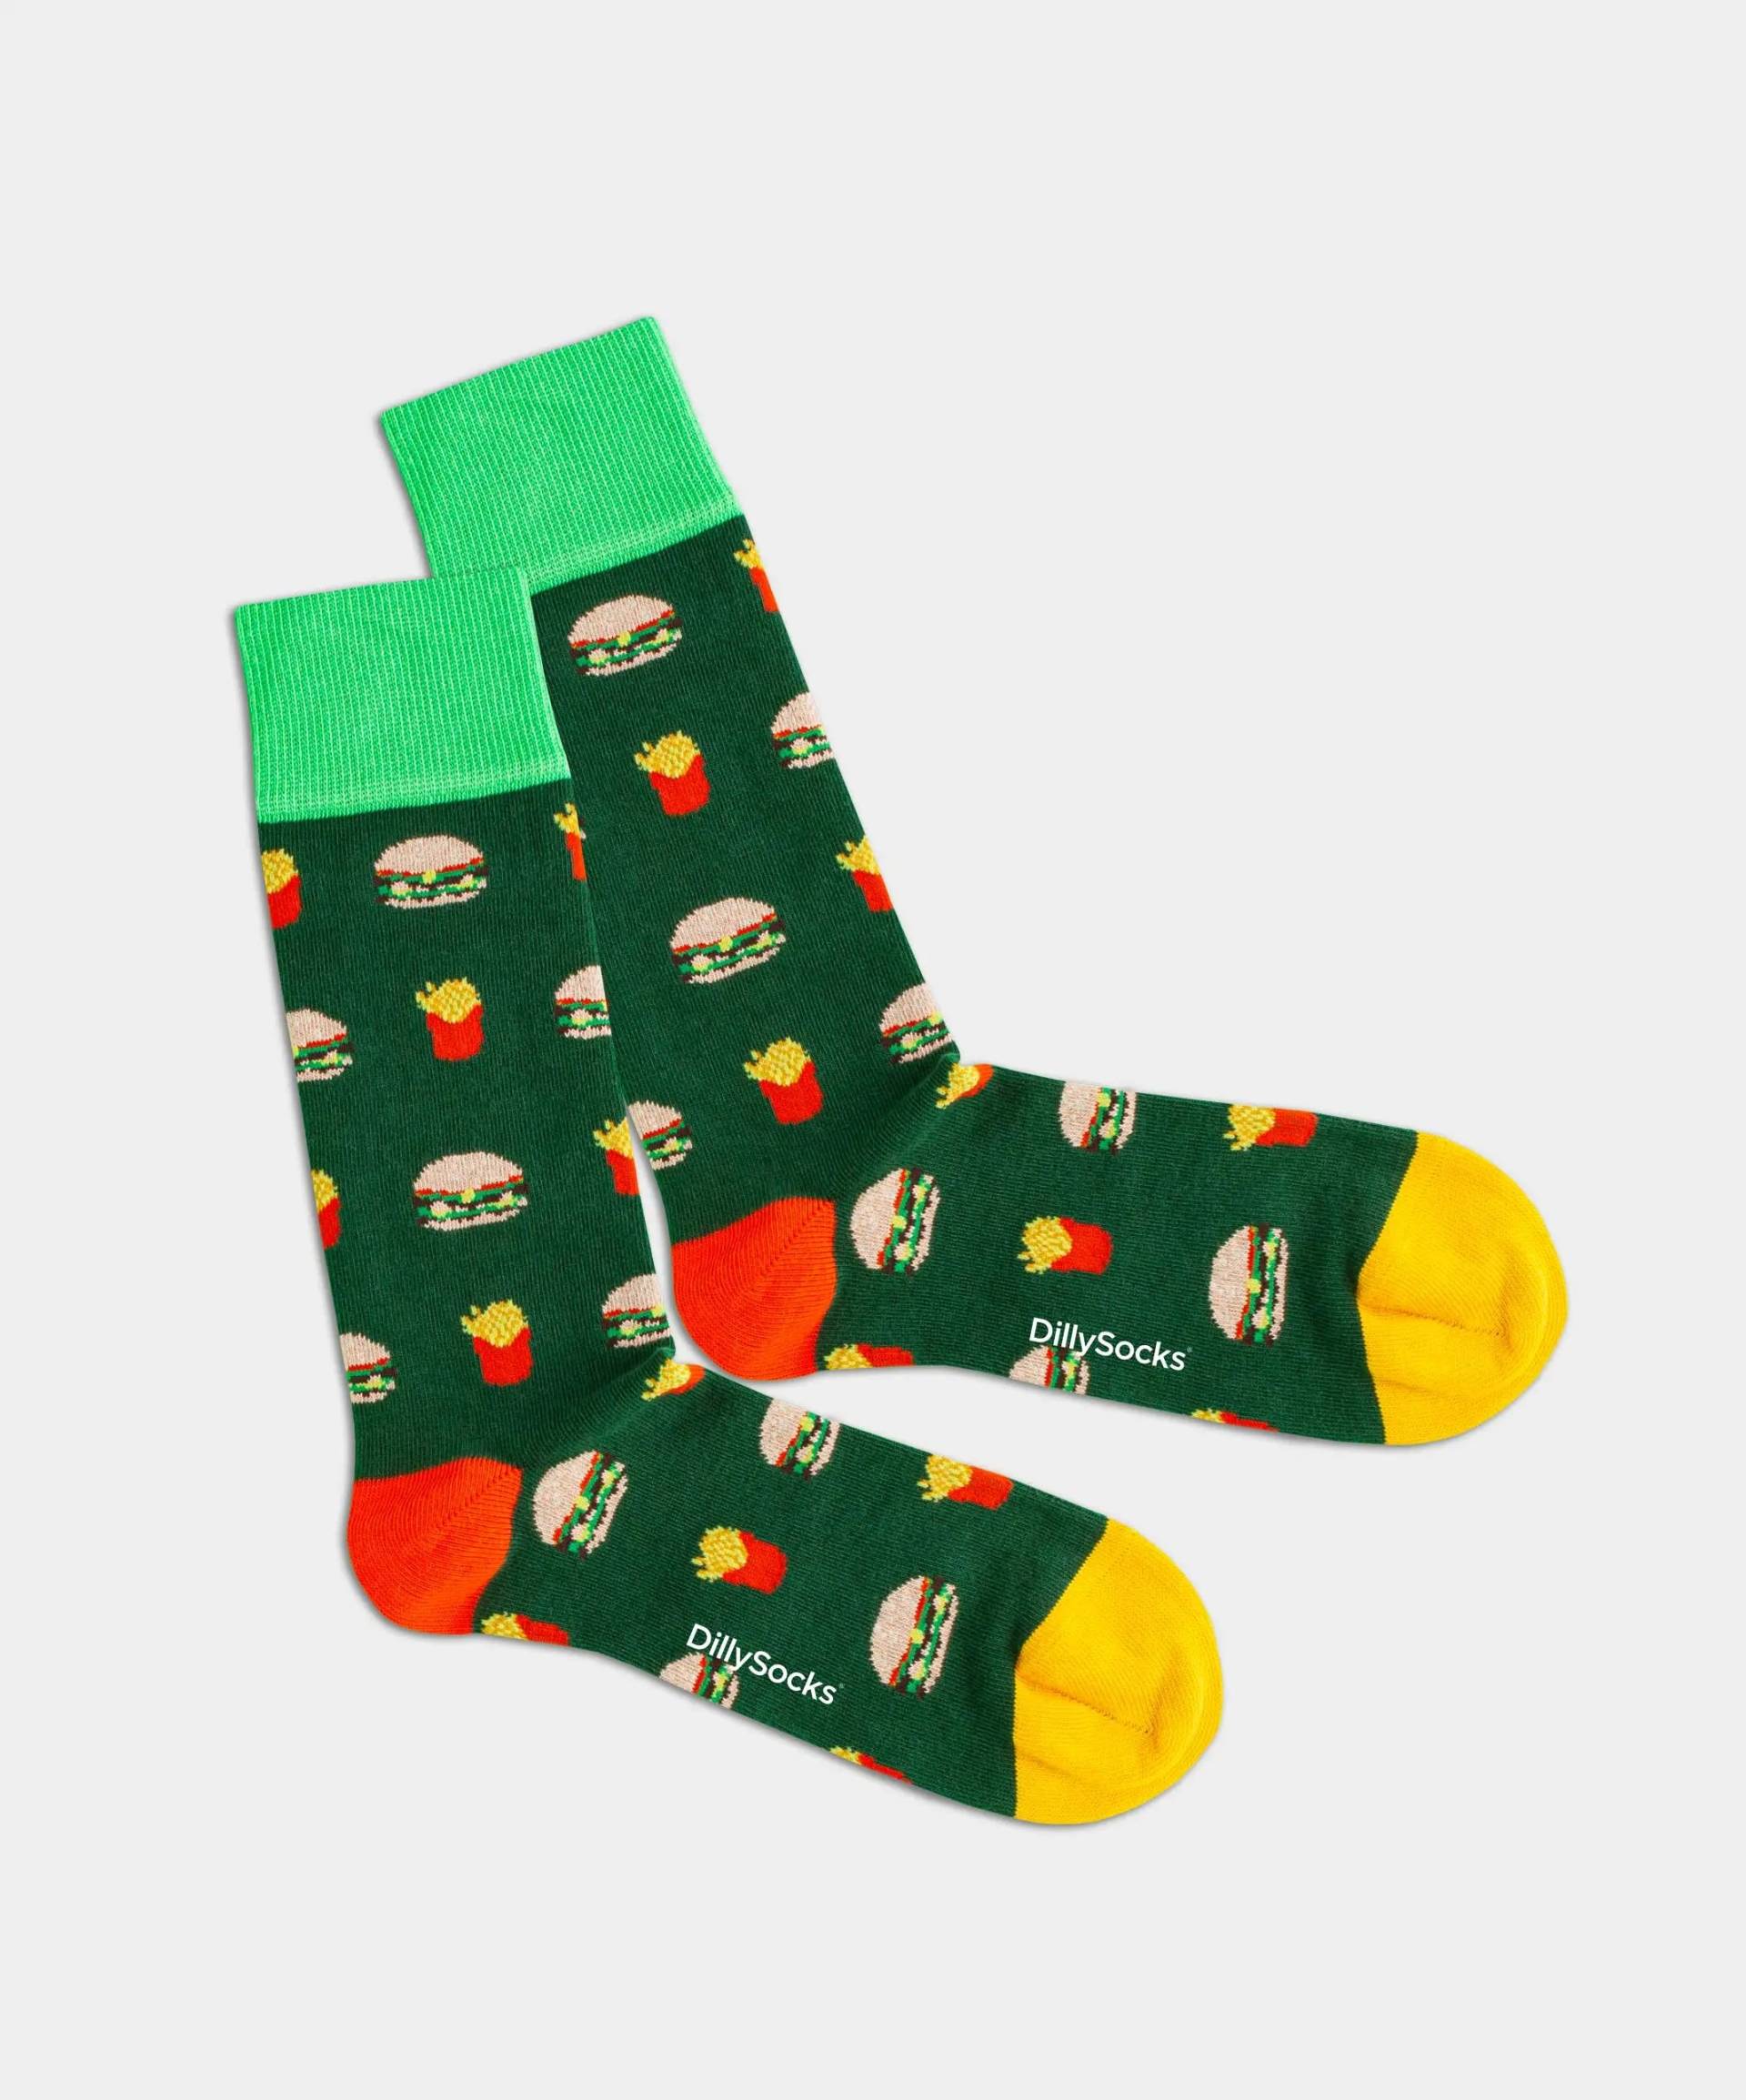 - Socken in Grün mit Essen Motiv/Muster von DillySocks